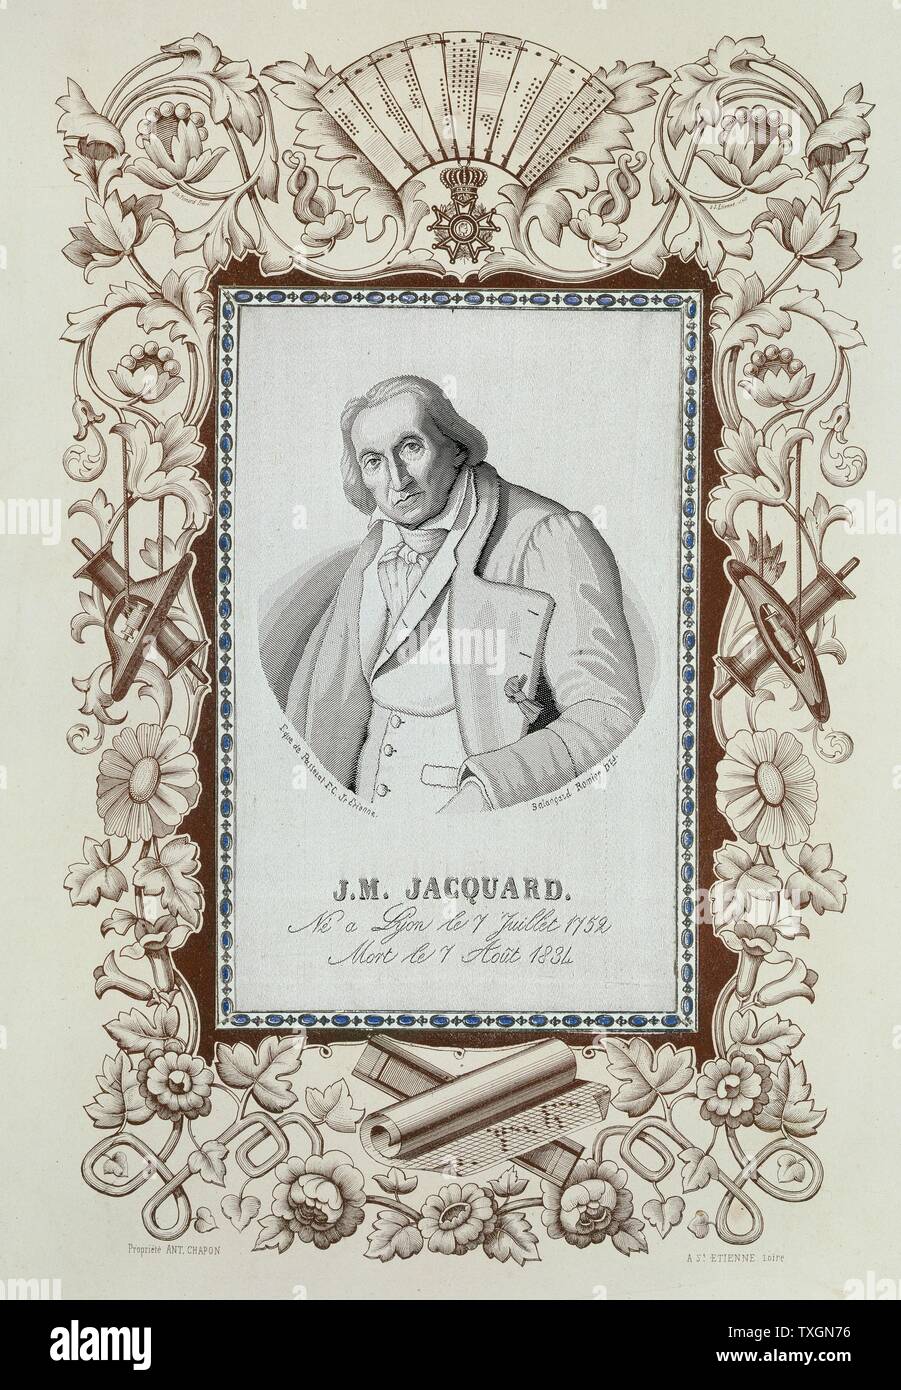 Jacquard, Joseph Marie (1752-1834) francese seta-weaver e inventore. Ritratto tessuti a telaio Jacquard, circondato da confine stampato che mostra le schede perforate, carta per la progettazione di schemi, navette, bobine, ecc. Colore Foto Stock